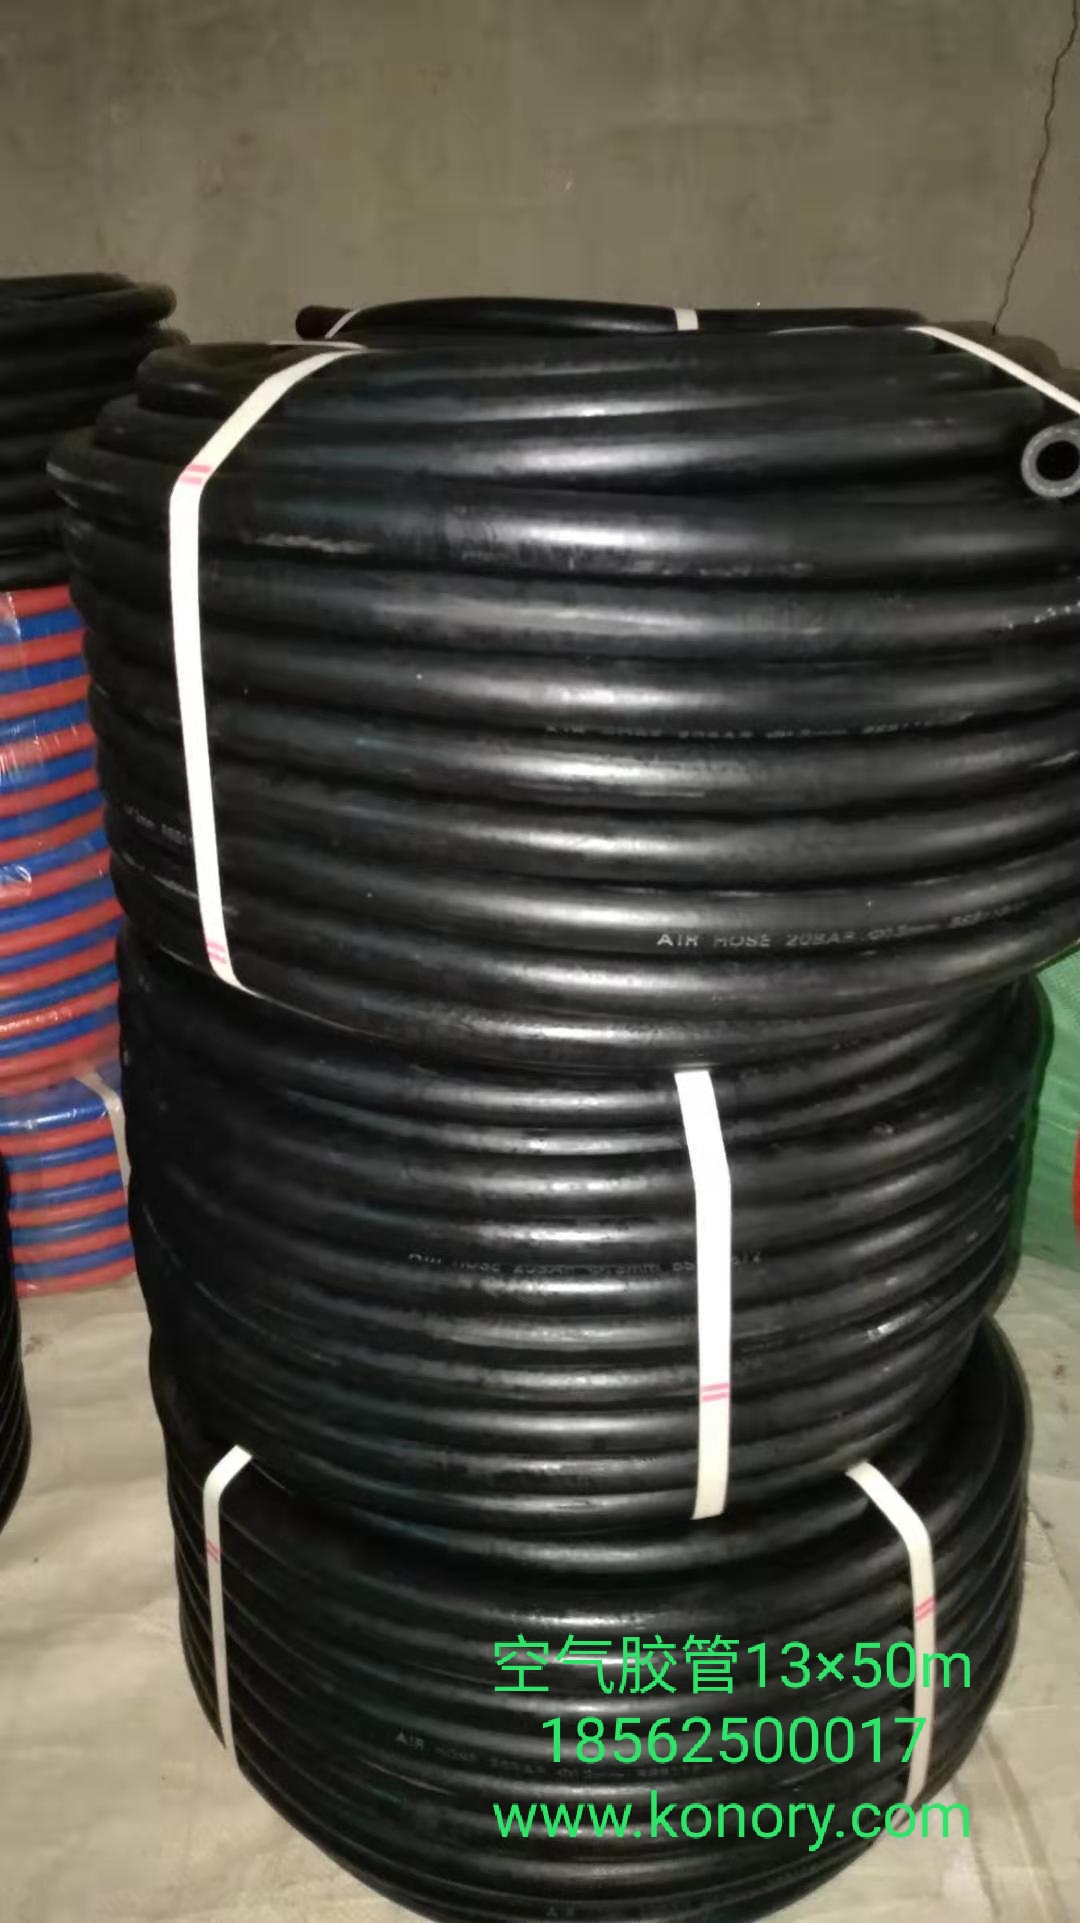 欢迎订购 青岛科诺瑞厂家直销 品质可靠 橡胶软管 喷砂胶管2